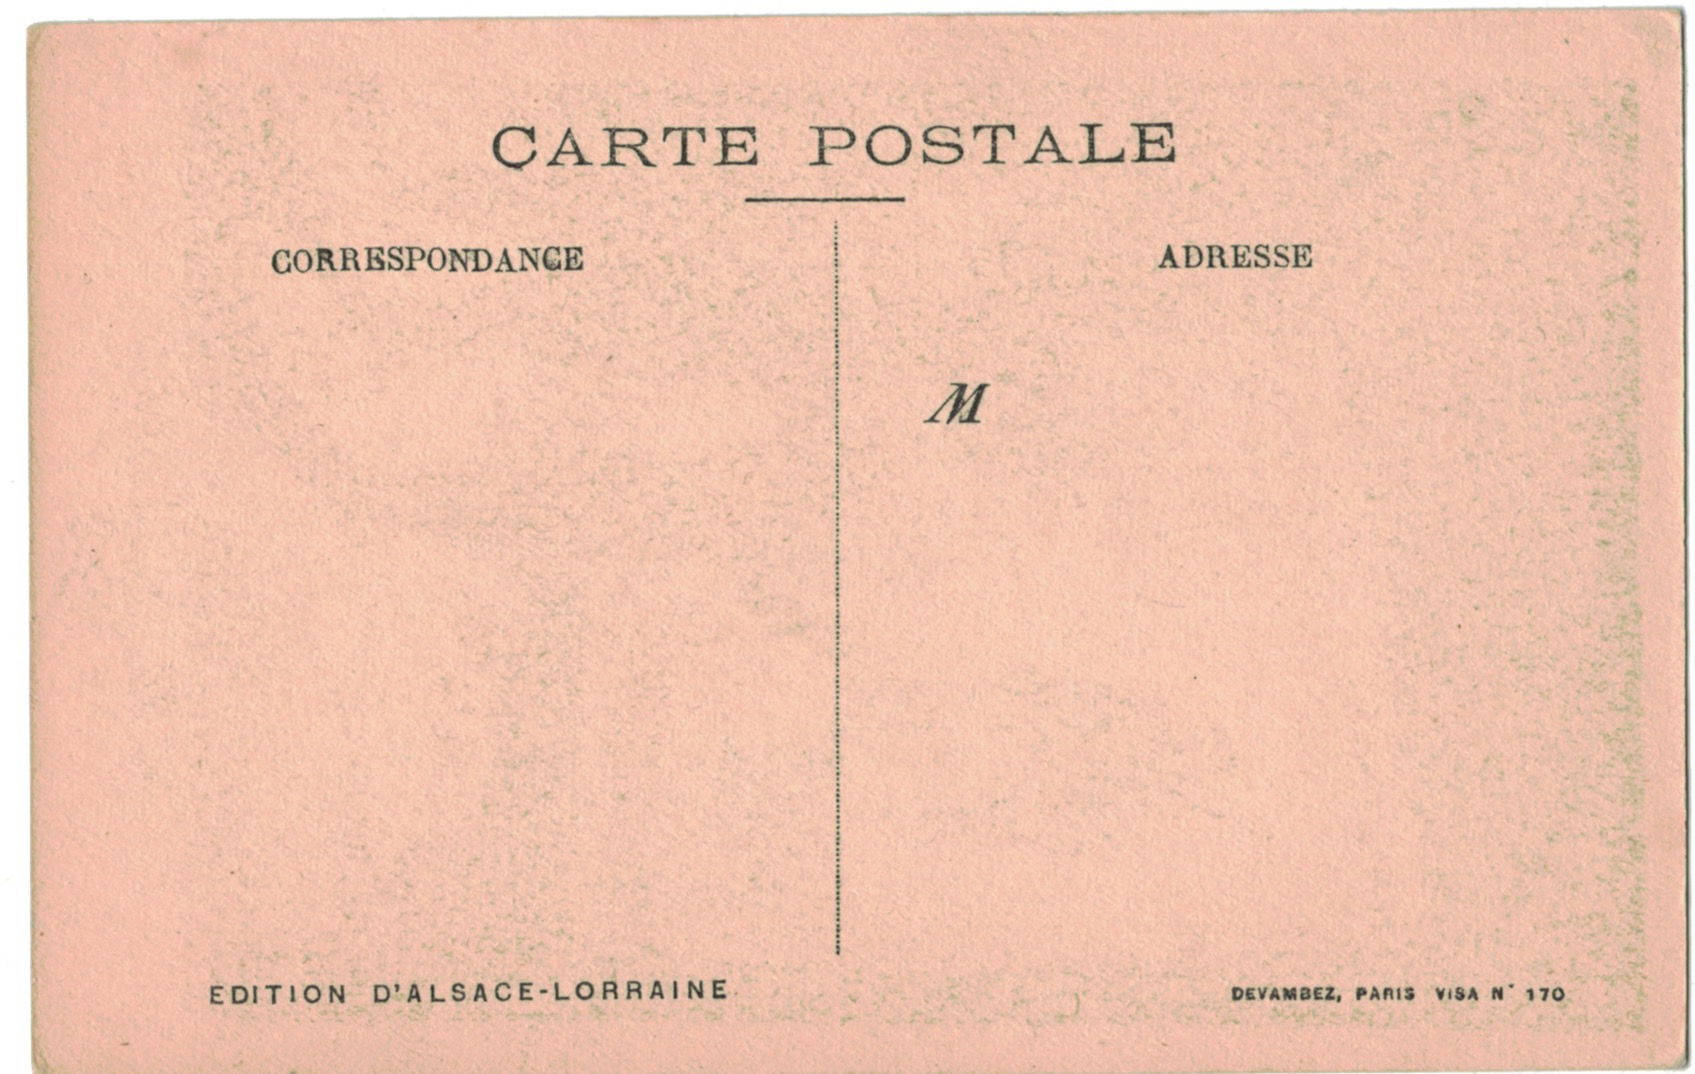 Carte Postale France Lithographie - iconographie 14/18 - Alsace - Noël 1918 - Libération - Poilu - Alsacien